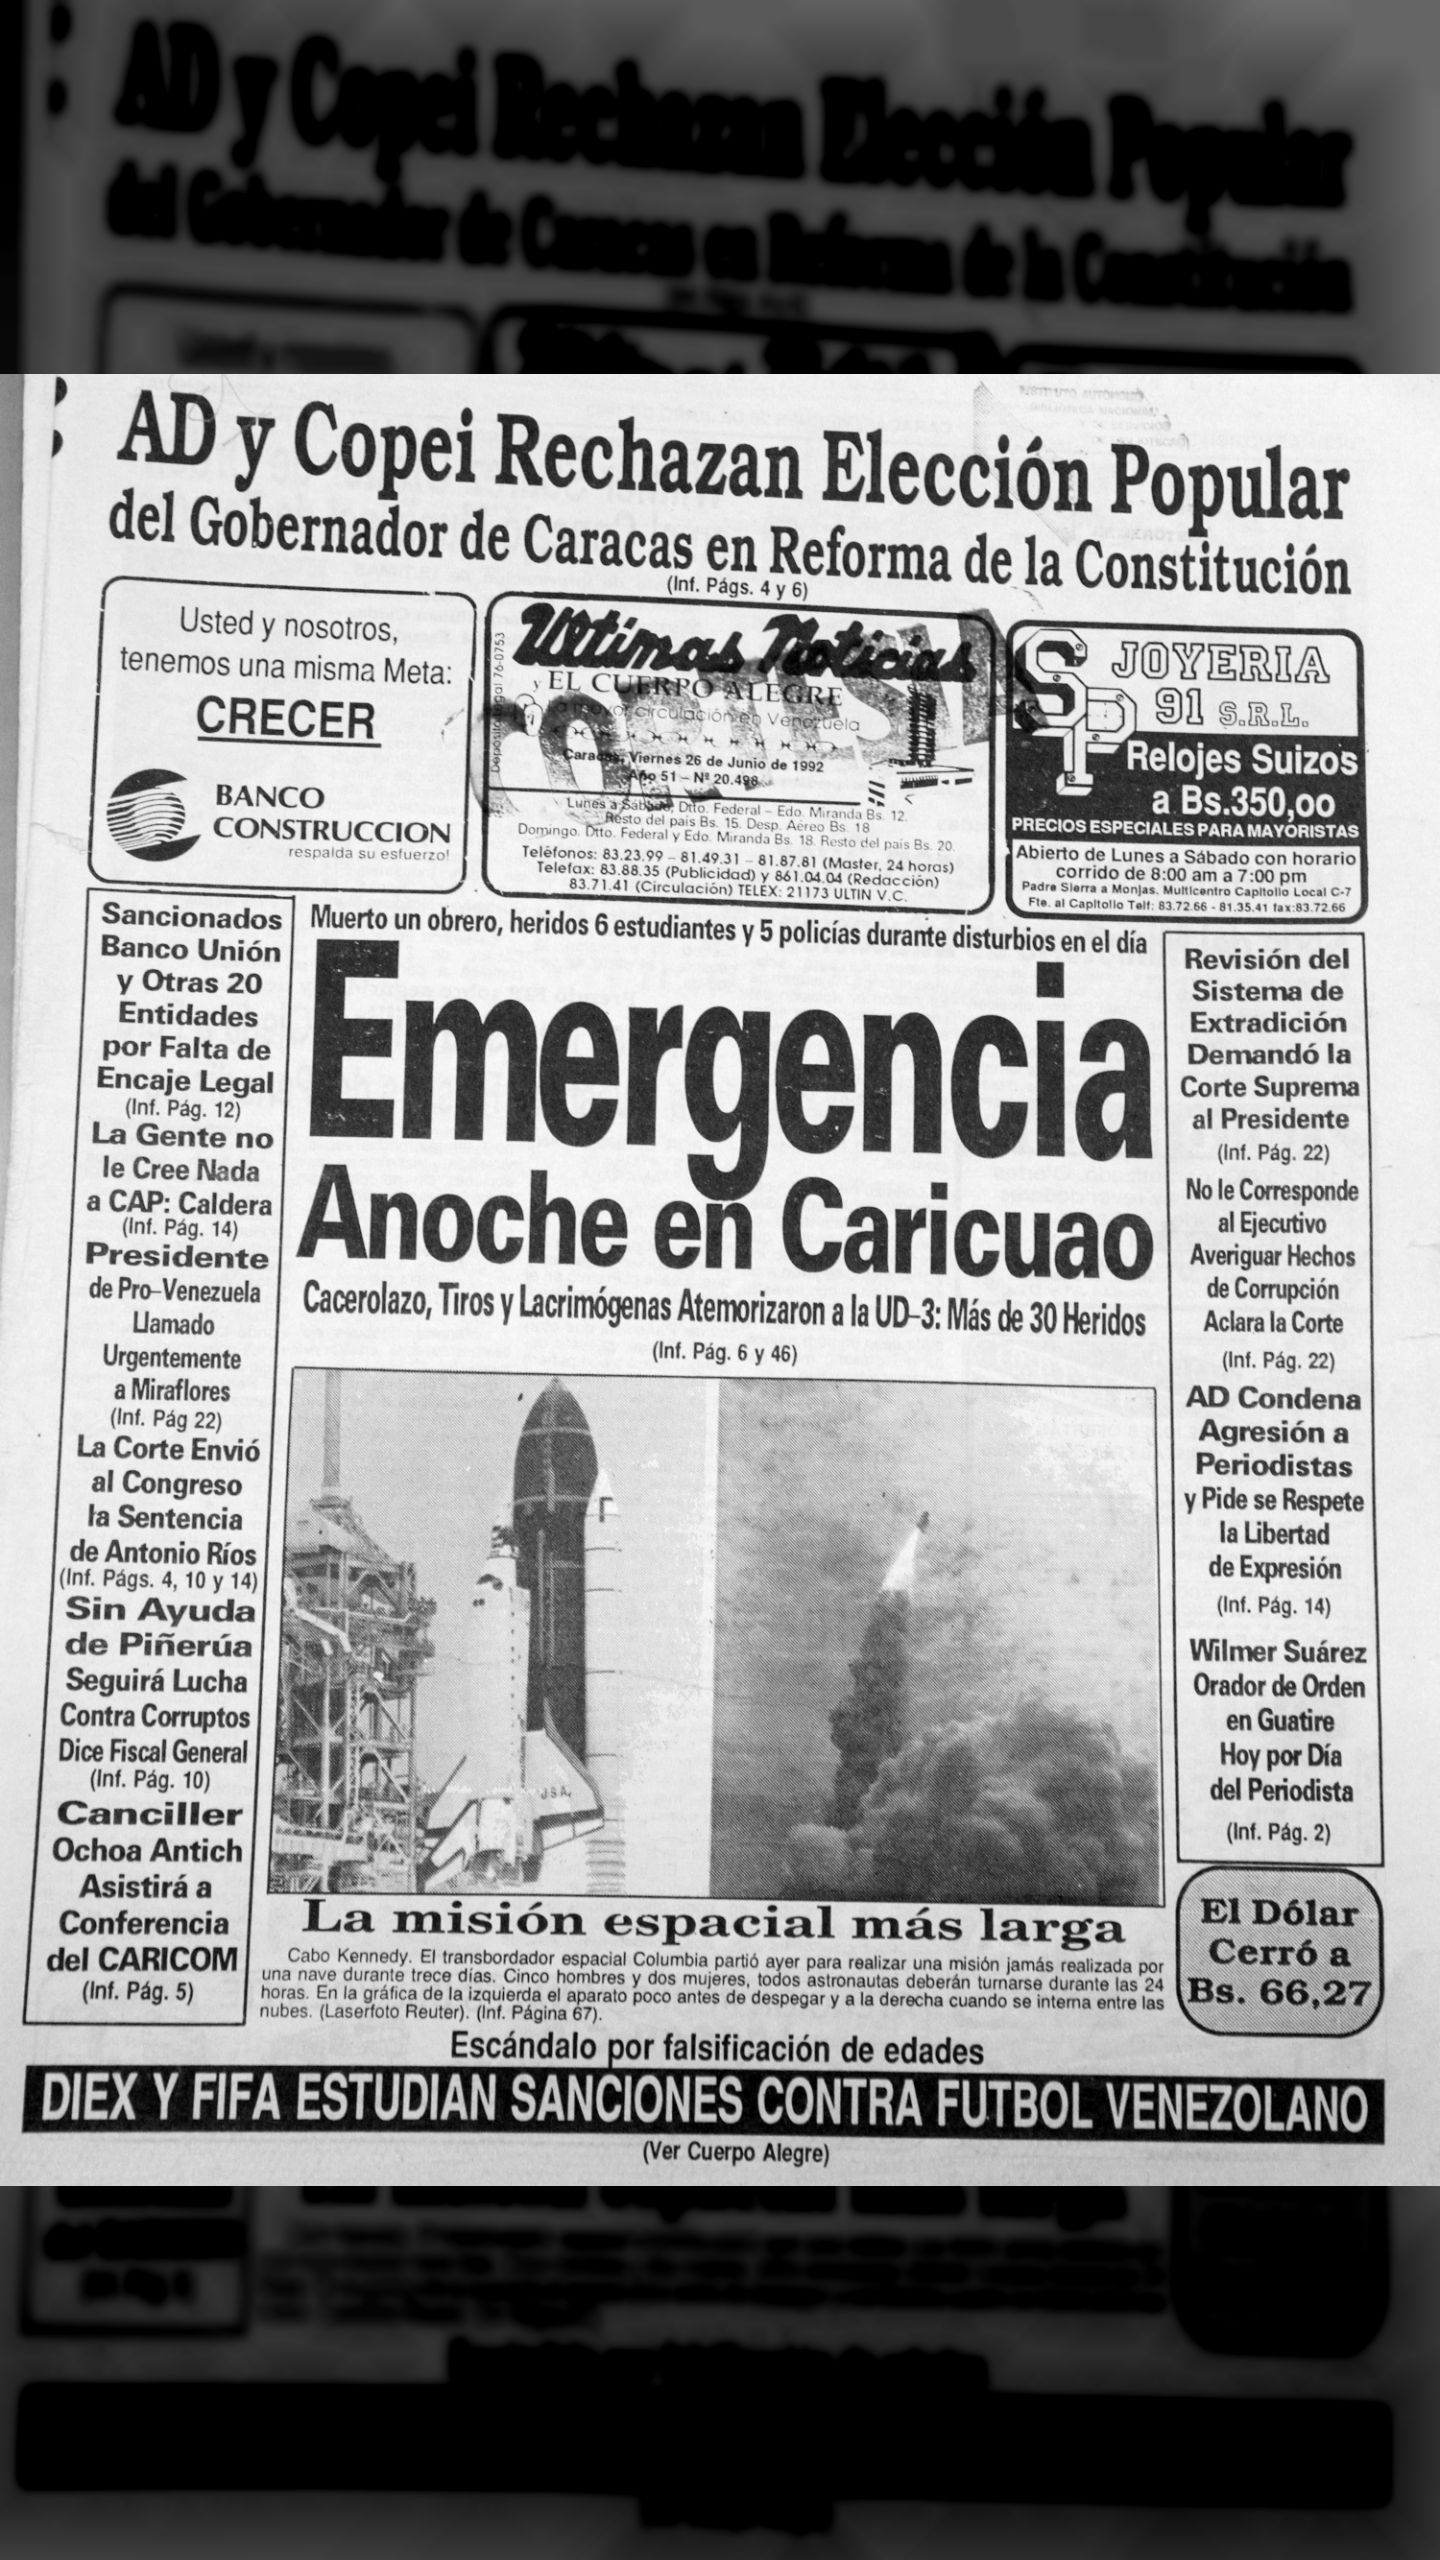 AD y Copei rechazan elección popular del gobernador de Caracas (Últimas Noticias, 26 de junio de 1992)